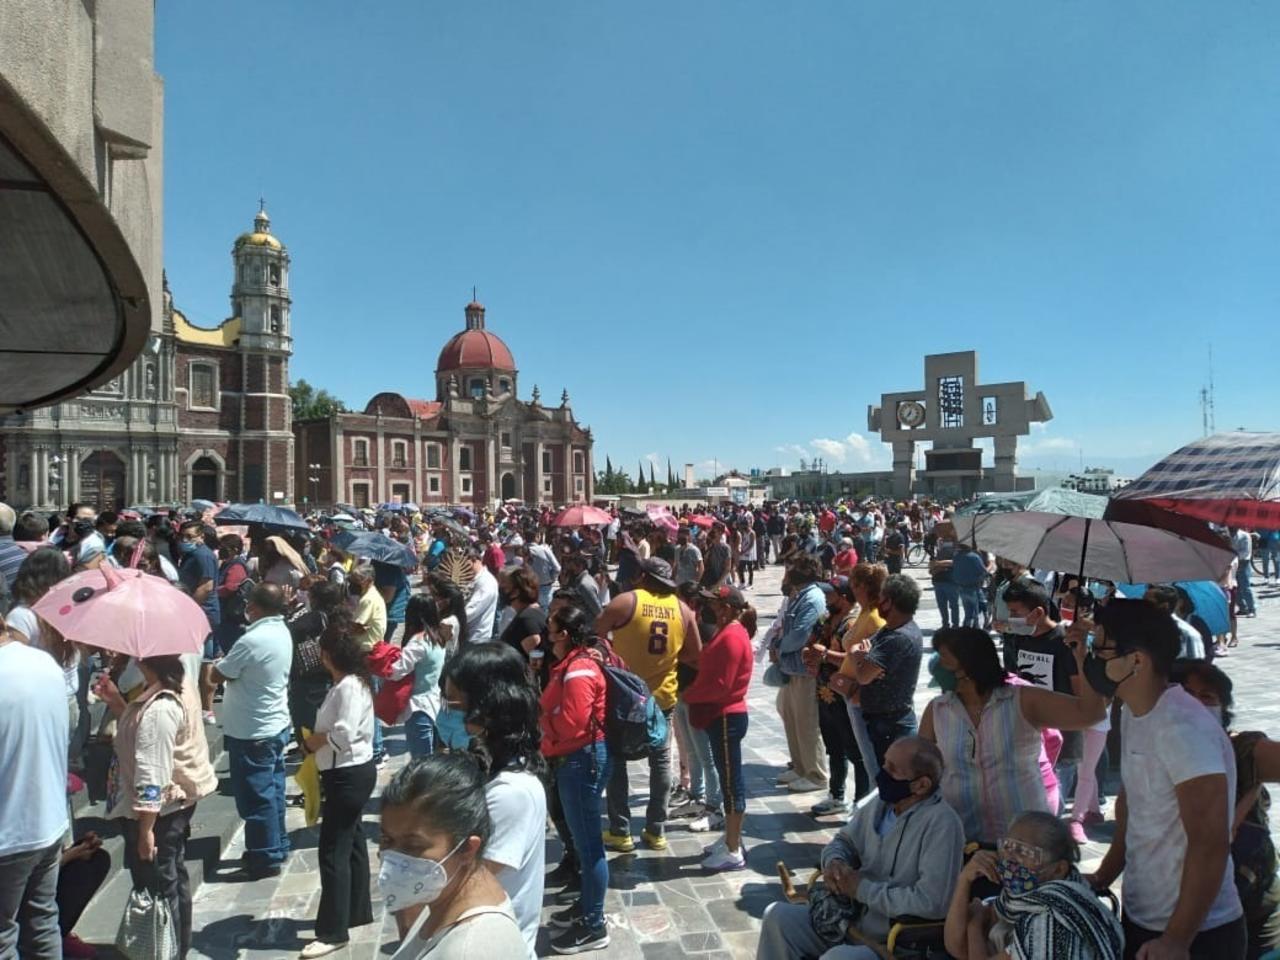 La Secretaría de Seguridad Ciudadana (SSC) informó que para el resguardo de los feligreses, visitantes y personas que habitan en las inmediaciones de la Basílica de Guadalupe, serán desplegados 2 mil 900 efectivos policiales y 220 vehículos oficiales. (ARCHIVO)
